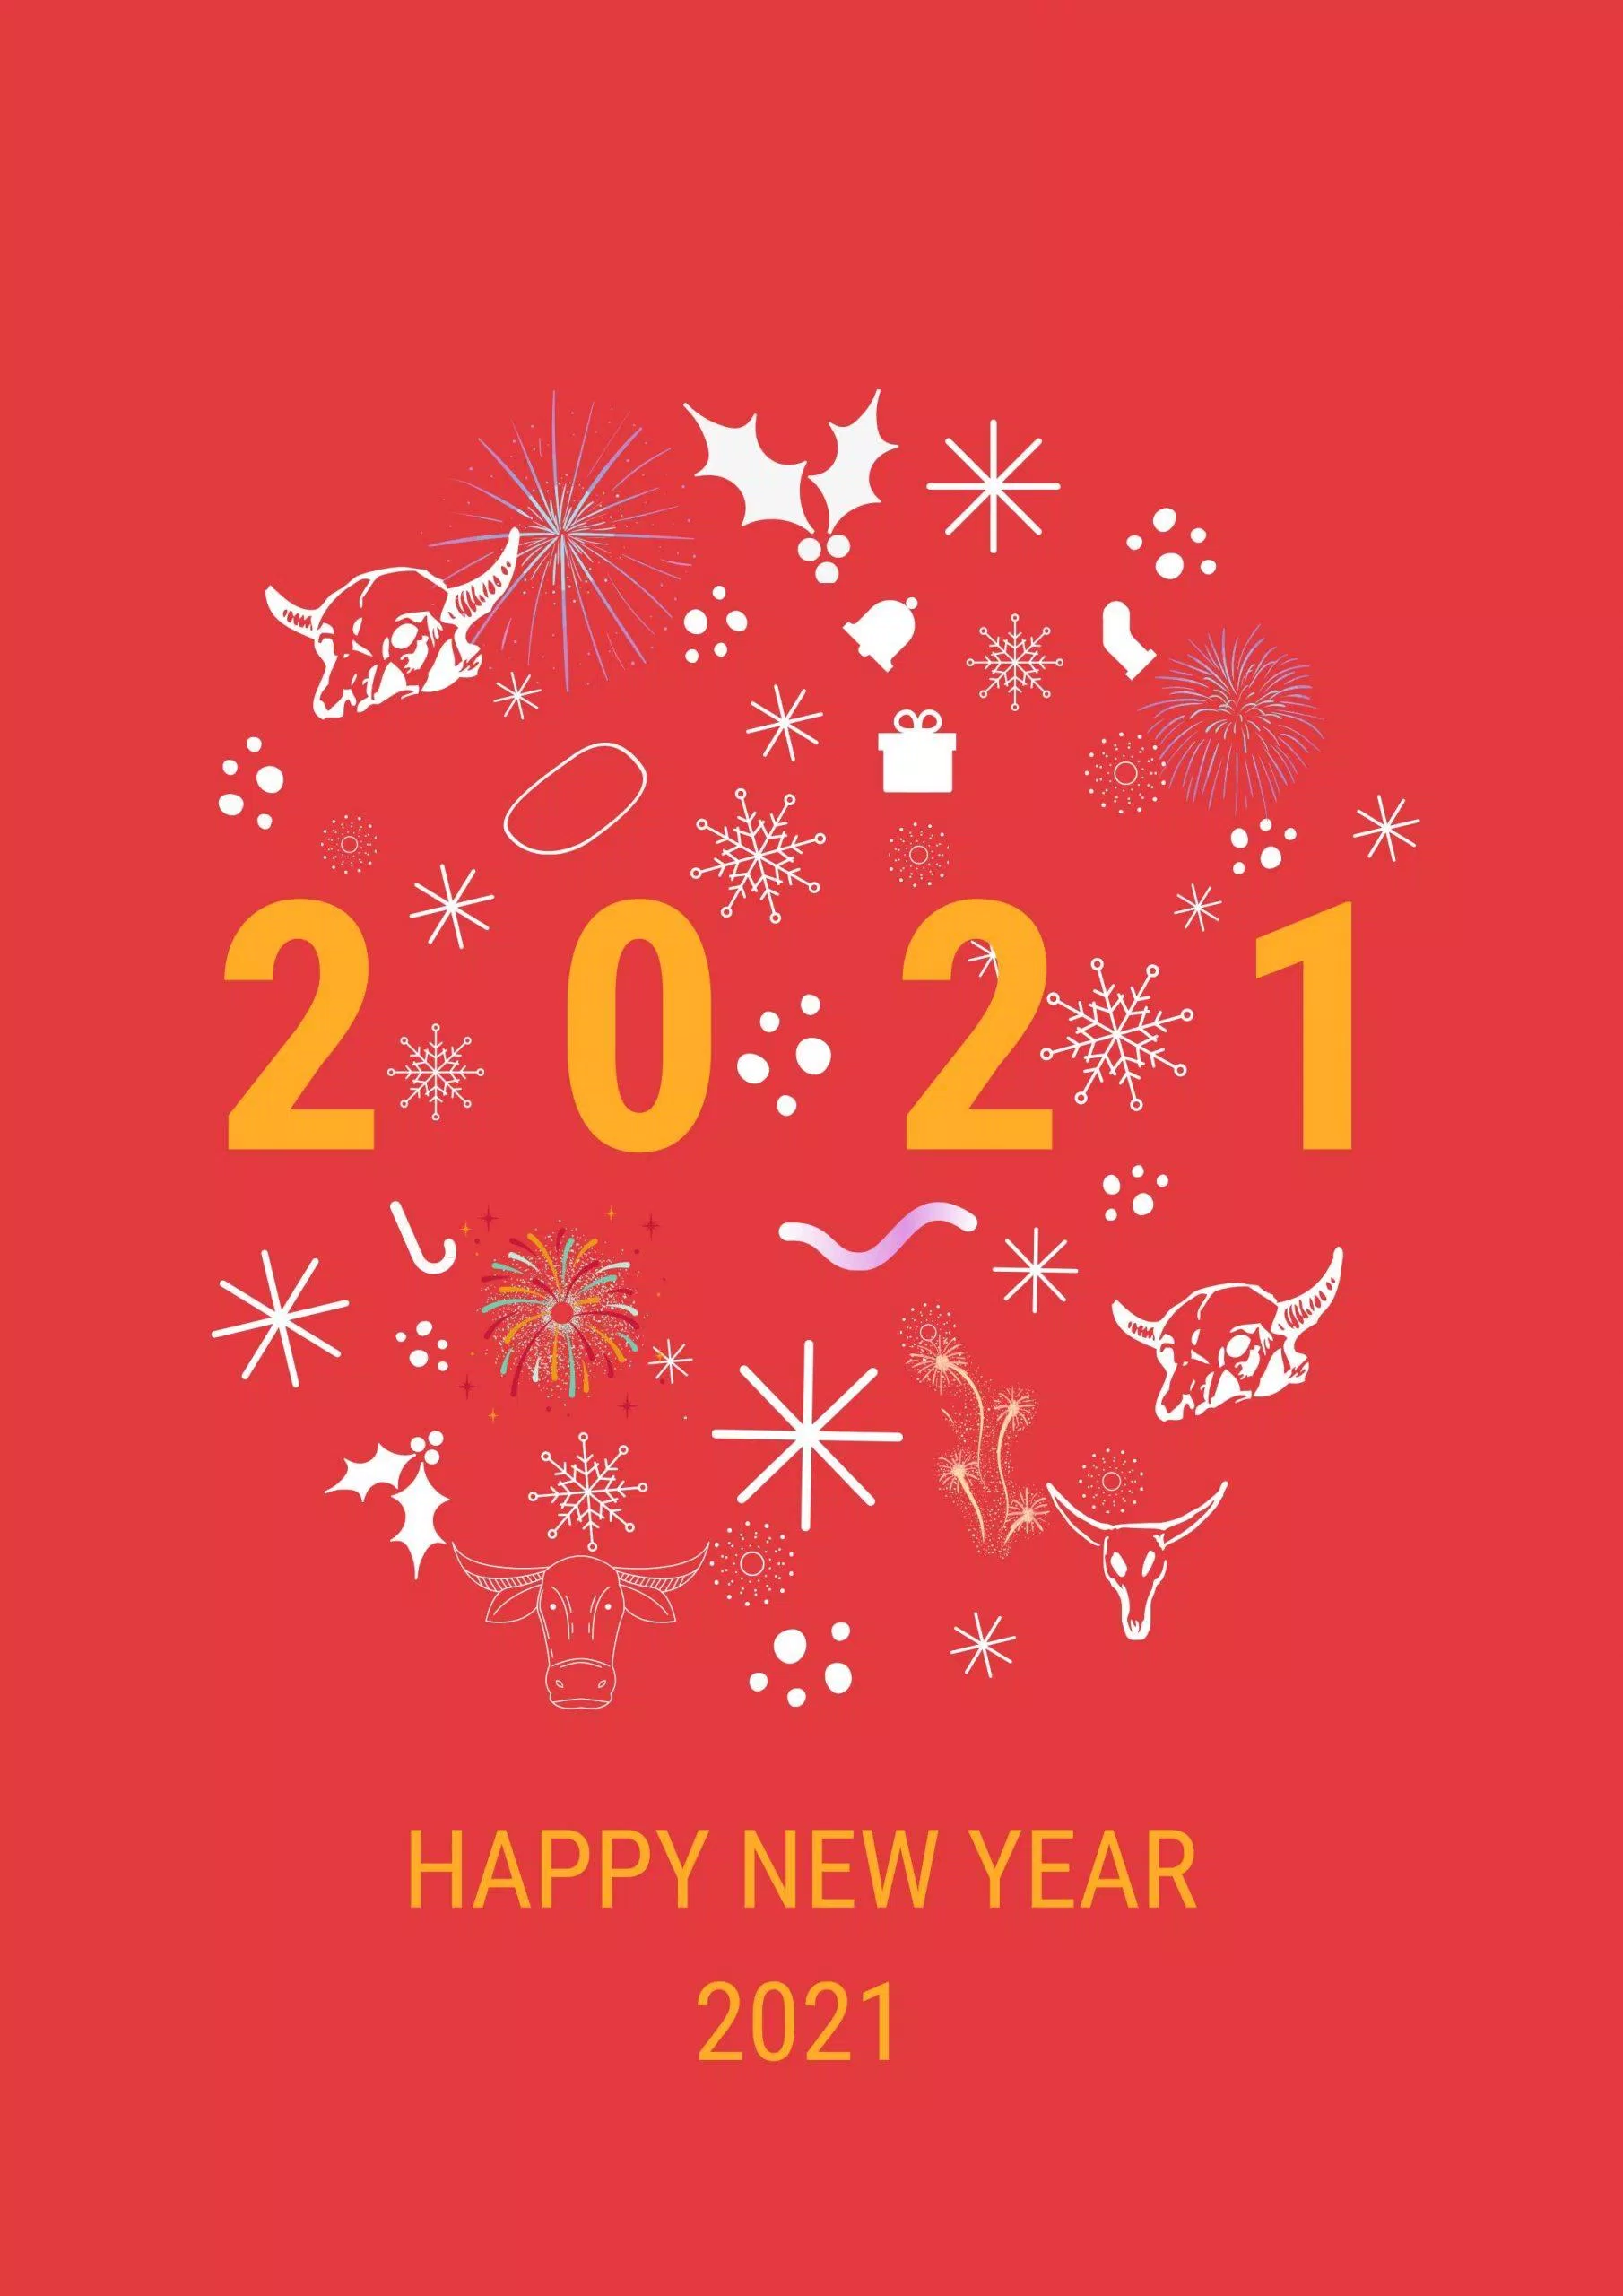 Thiệp chúc mừng năm mới 2021 (Ảnh: dthha11)